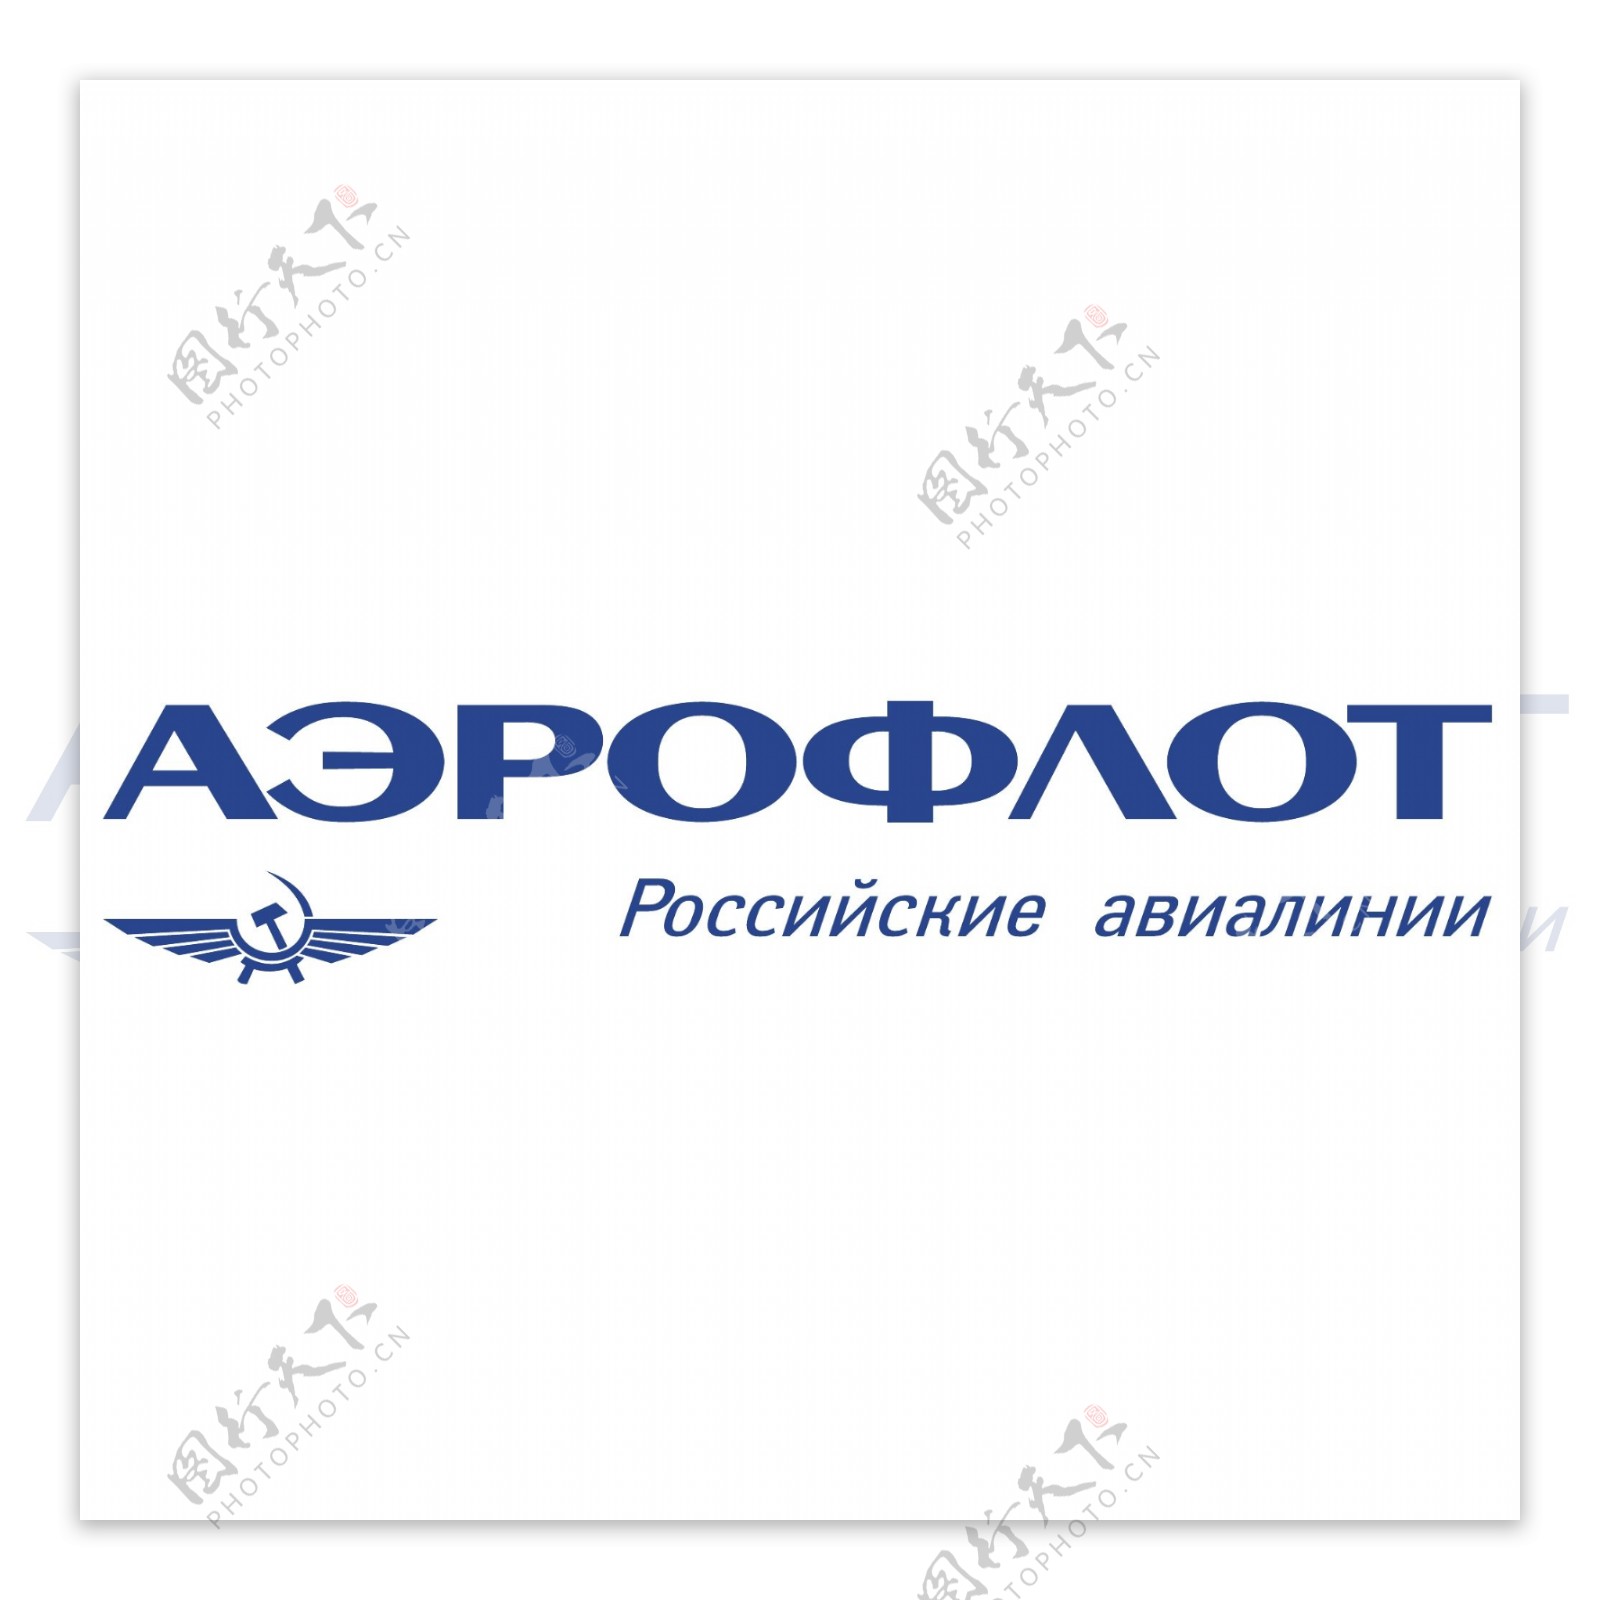 俄罗斯国际航空公司